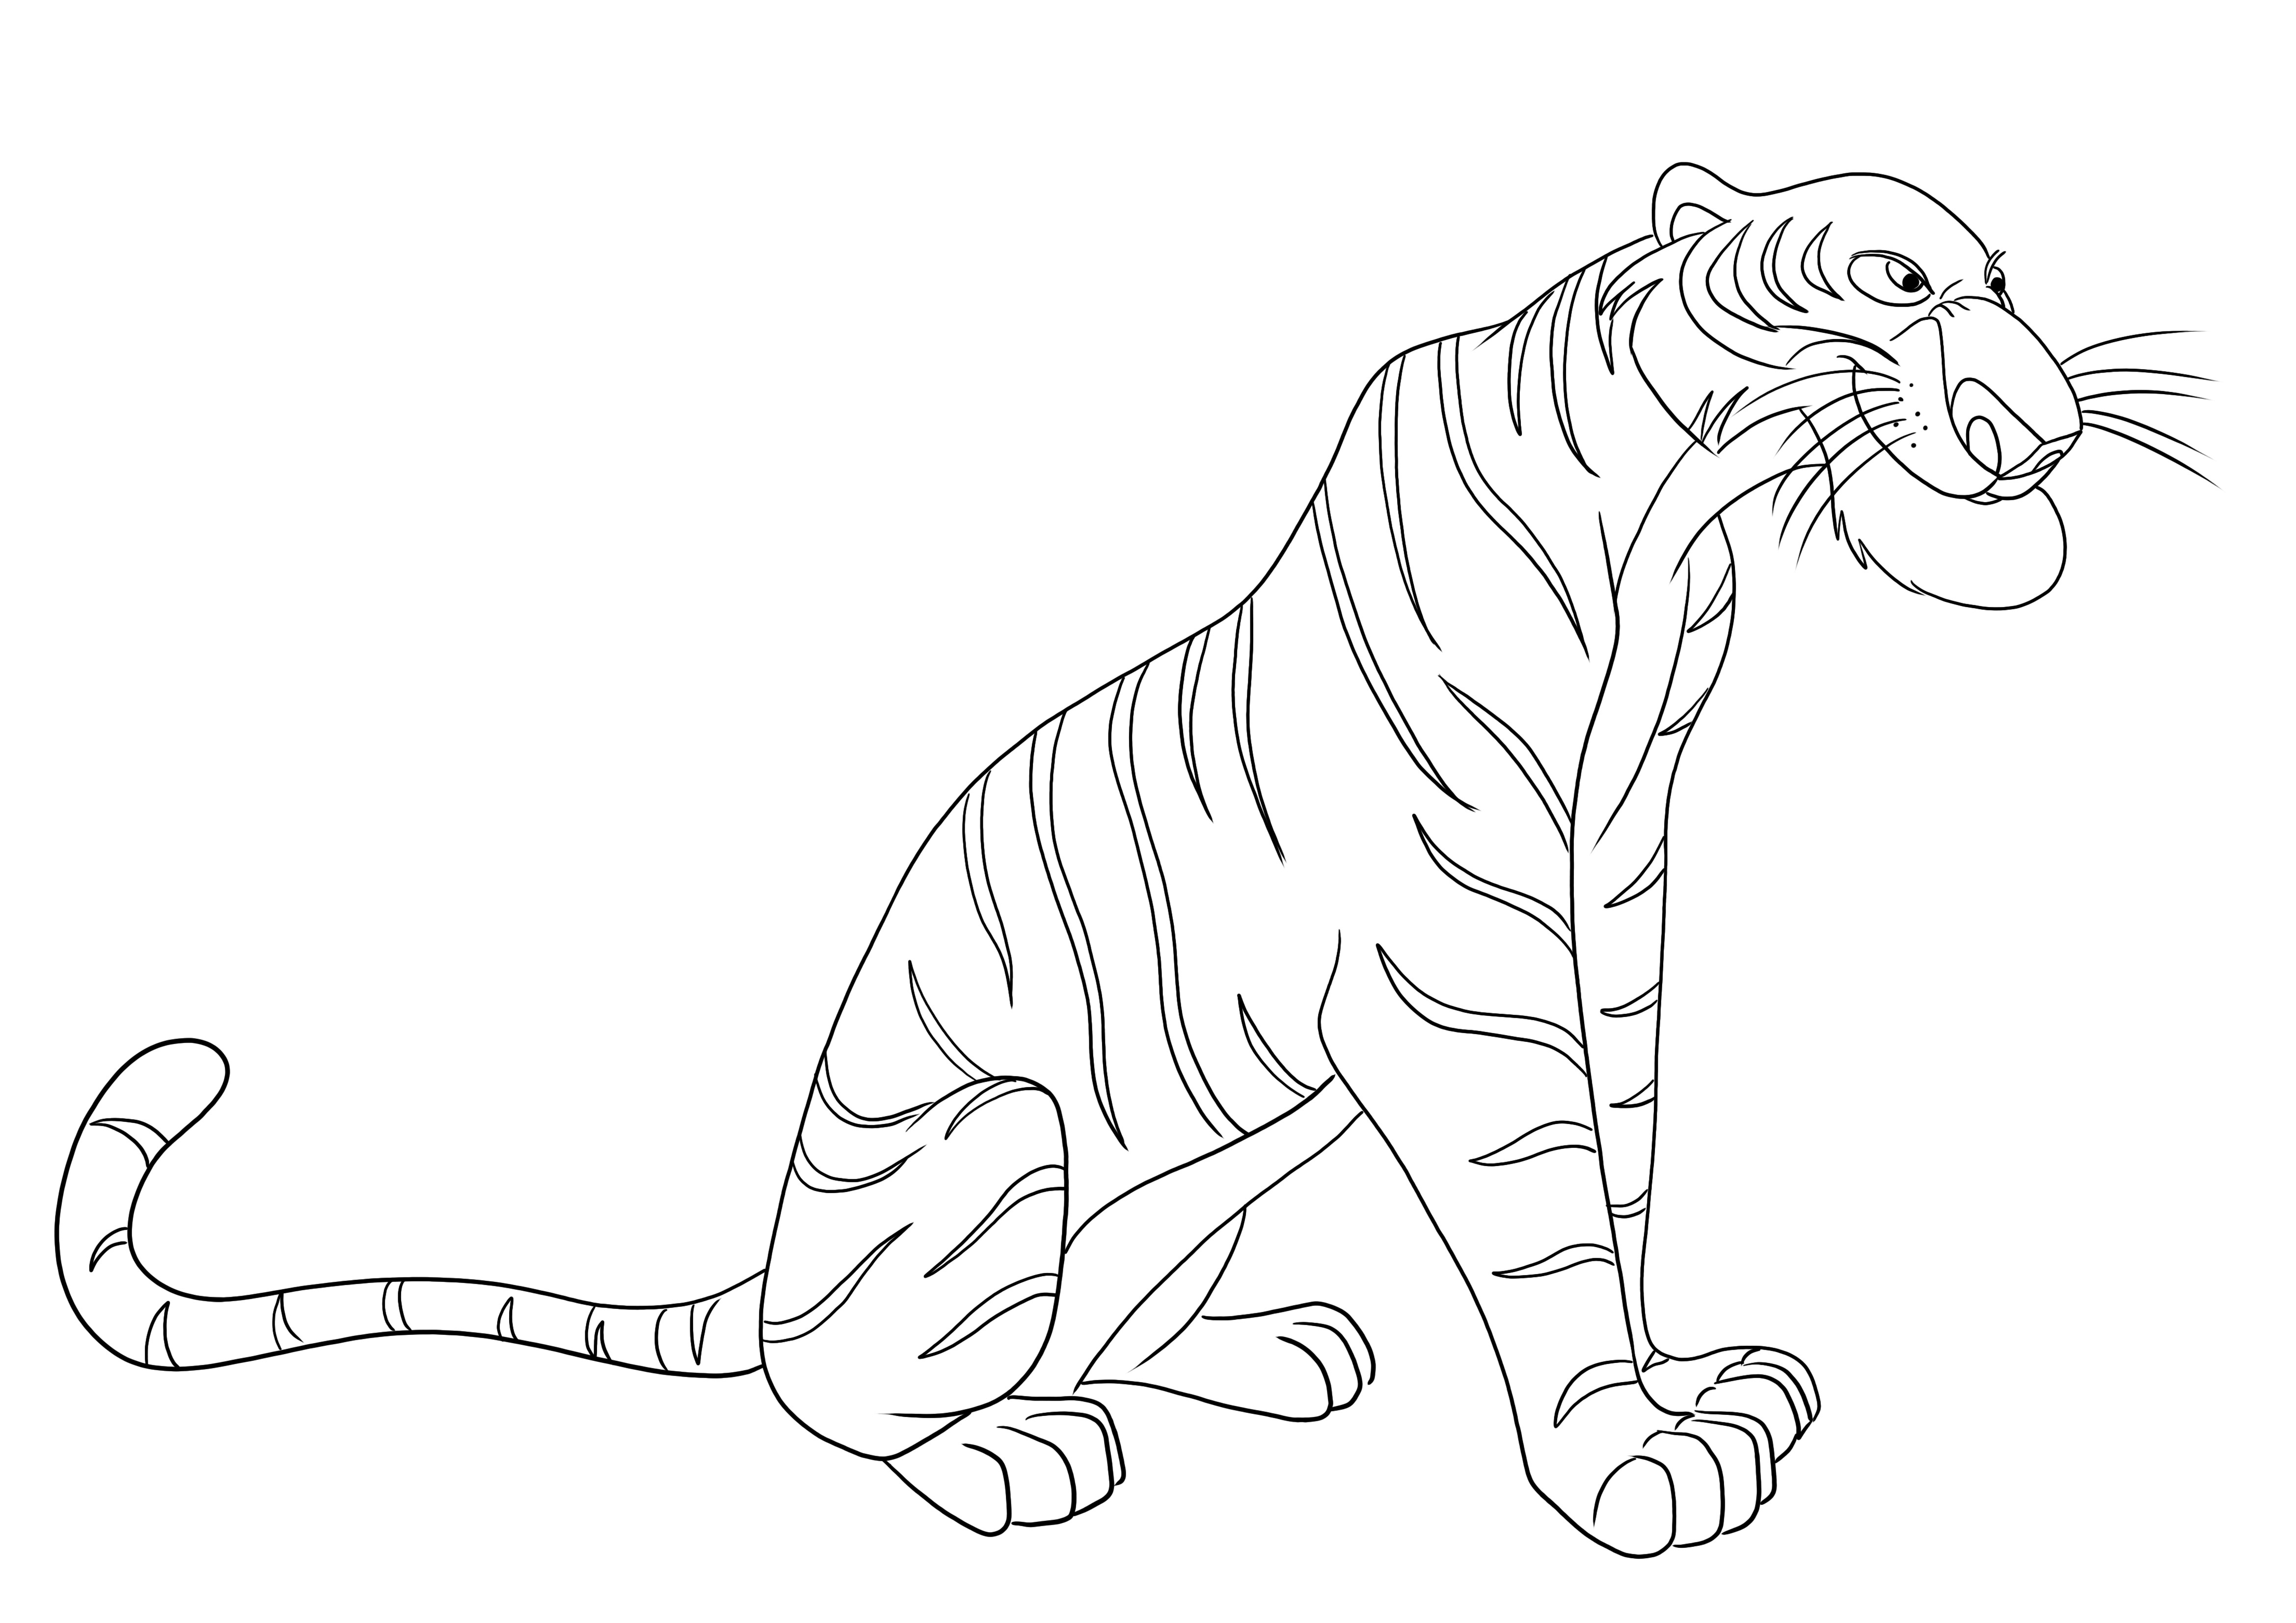 Shere Khan el tigre del libro de la selva para colorear, pintar e imprimir gratis